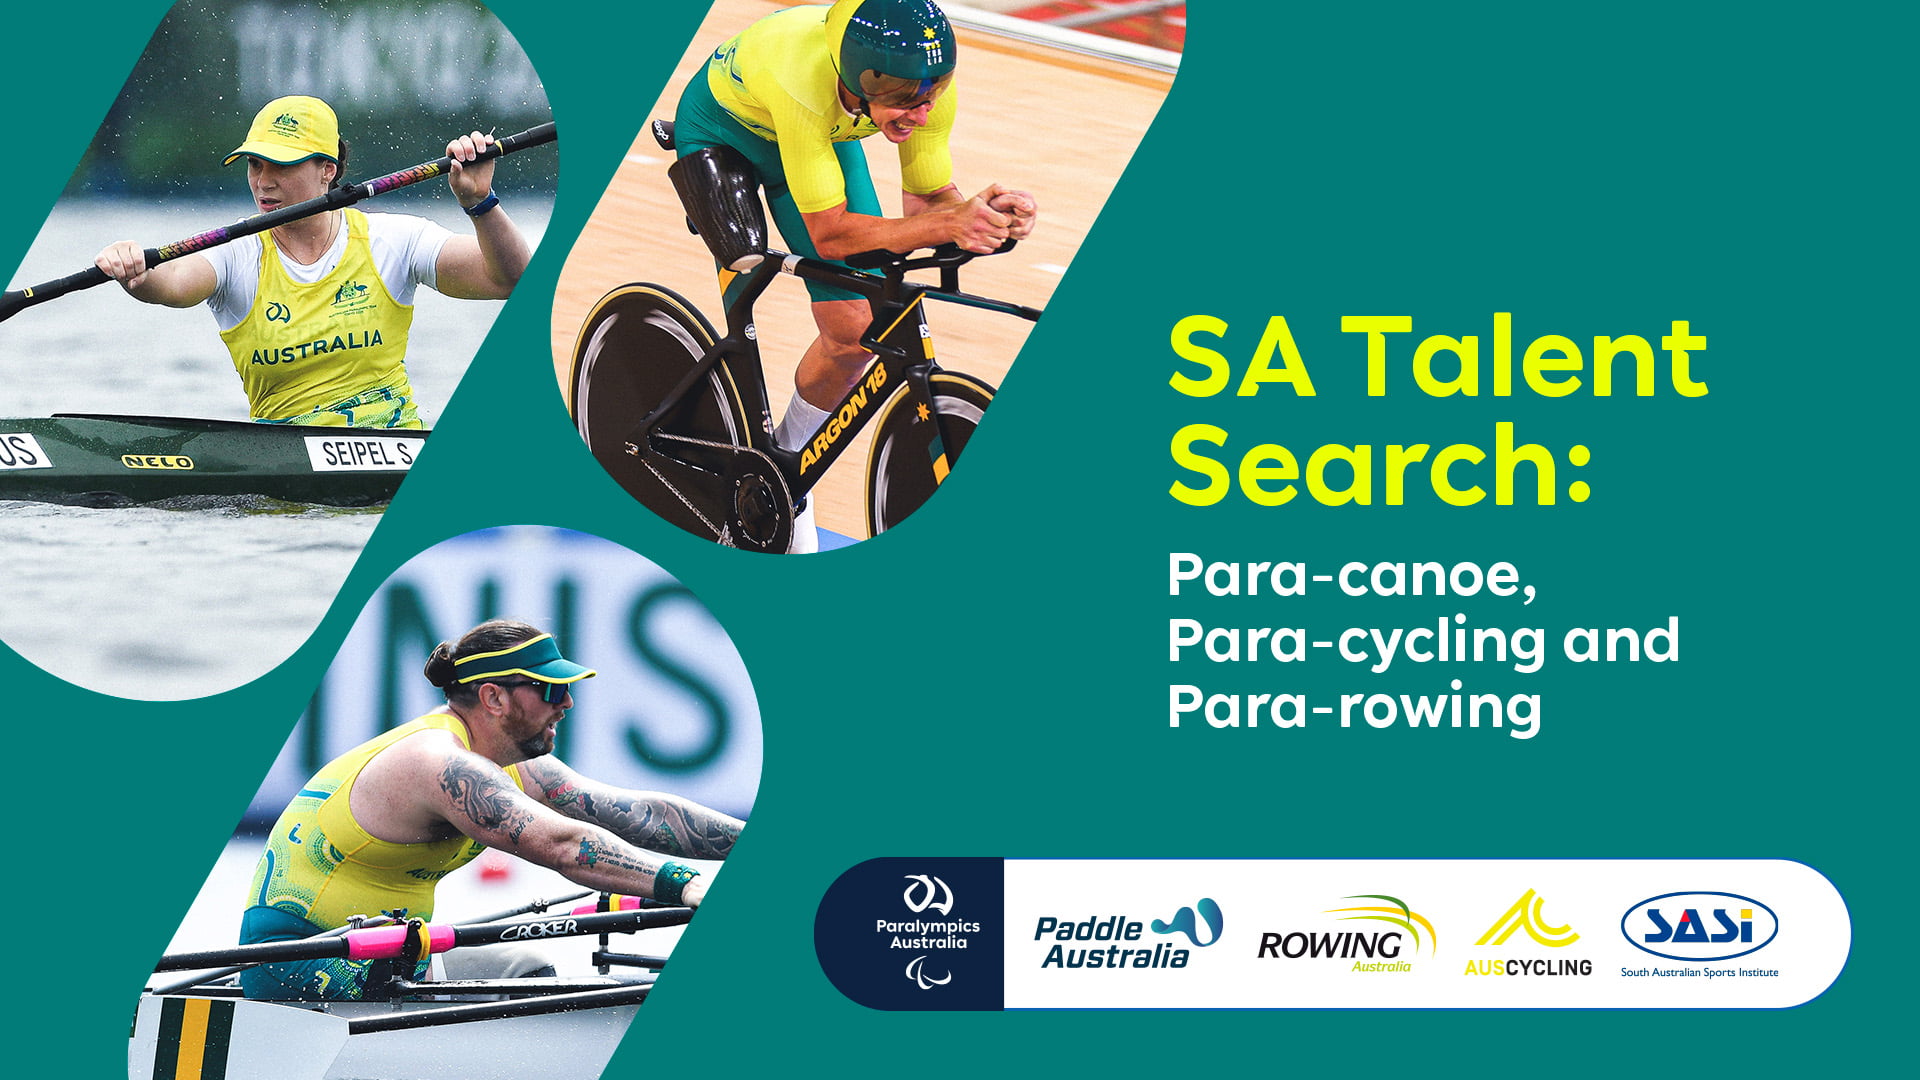 Images of a Para-canoe, Para-cycling and Para-rowing athletes. Text reads: SA Talent Search: Para-canoe, Para-cycling and Para-rowing.